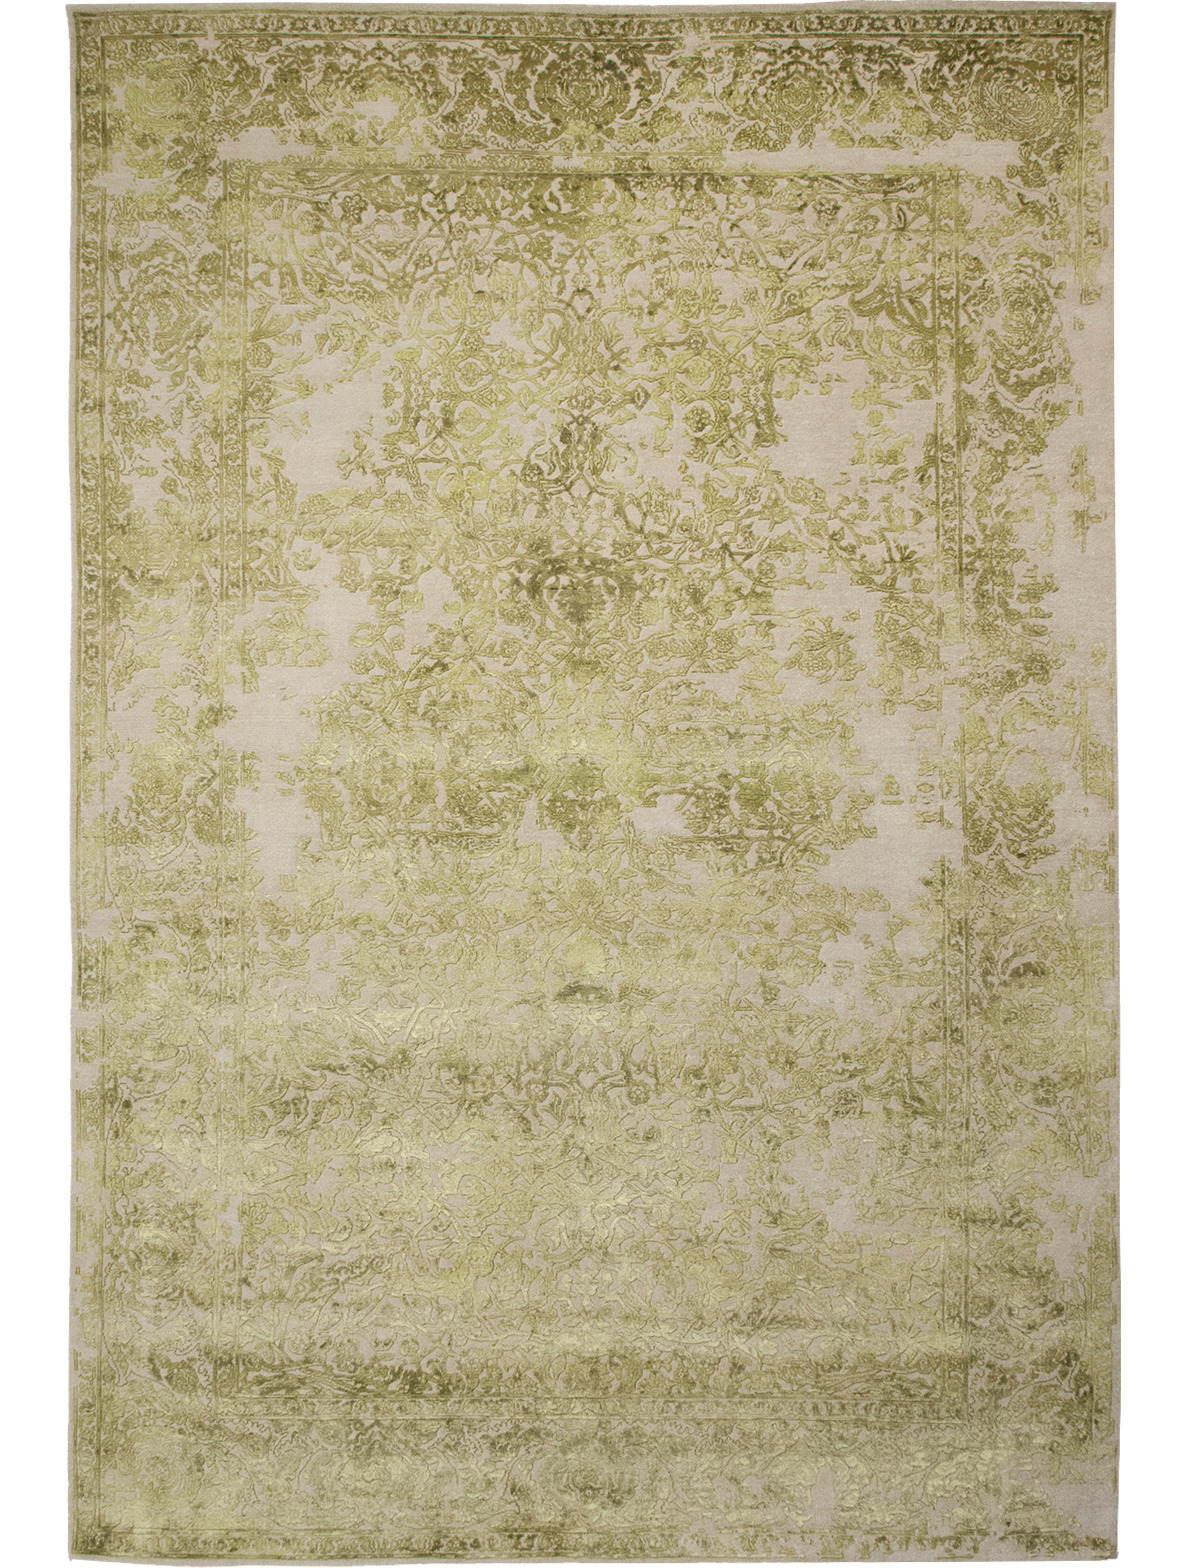 Gargy Lime Rug ☞ Size: 270 x 270 cm